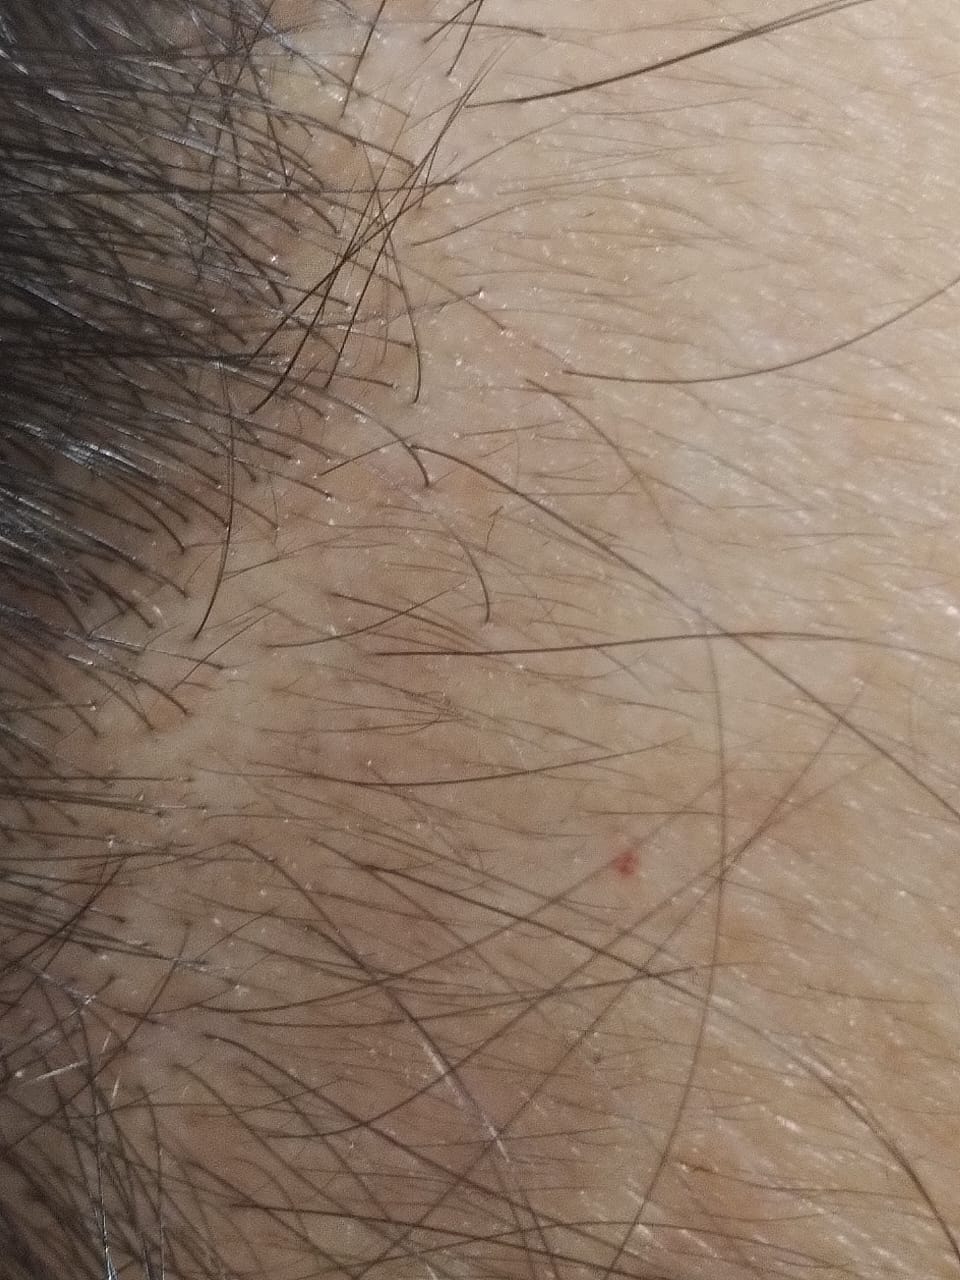 foto alopecia despues tratamiento mesoterapia microagujas